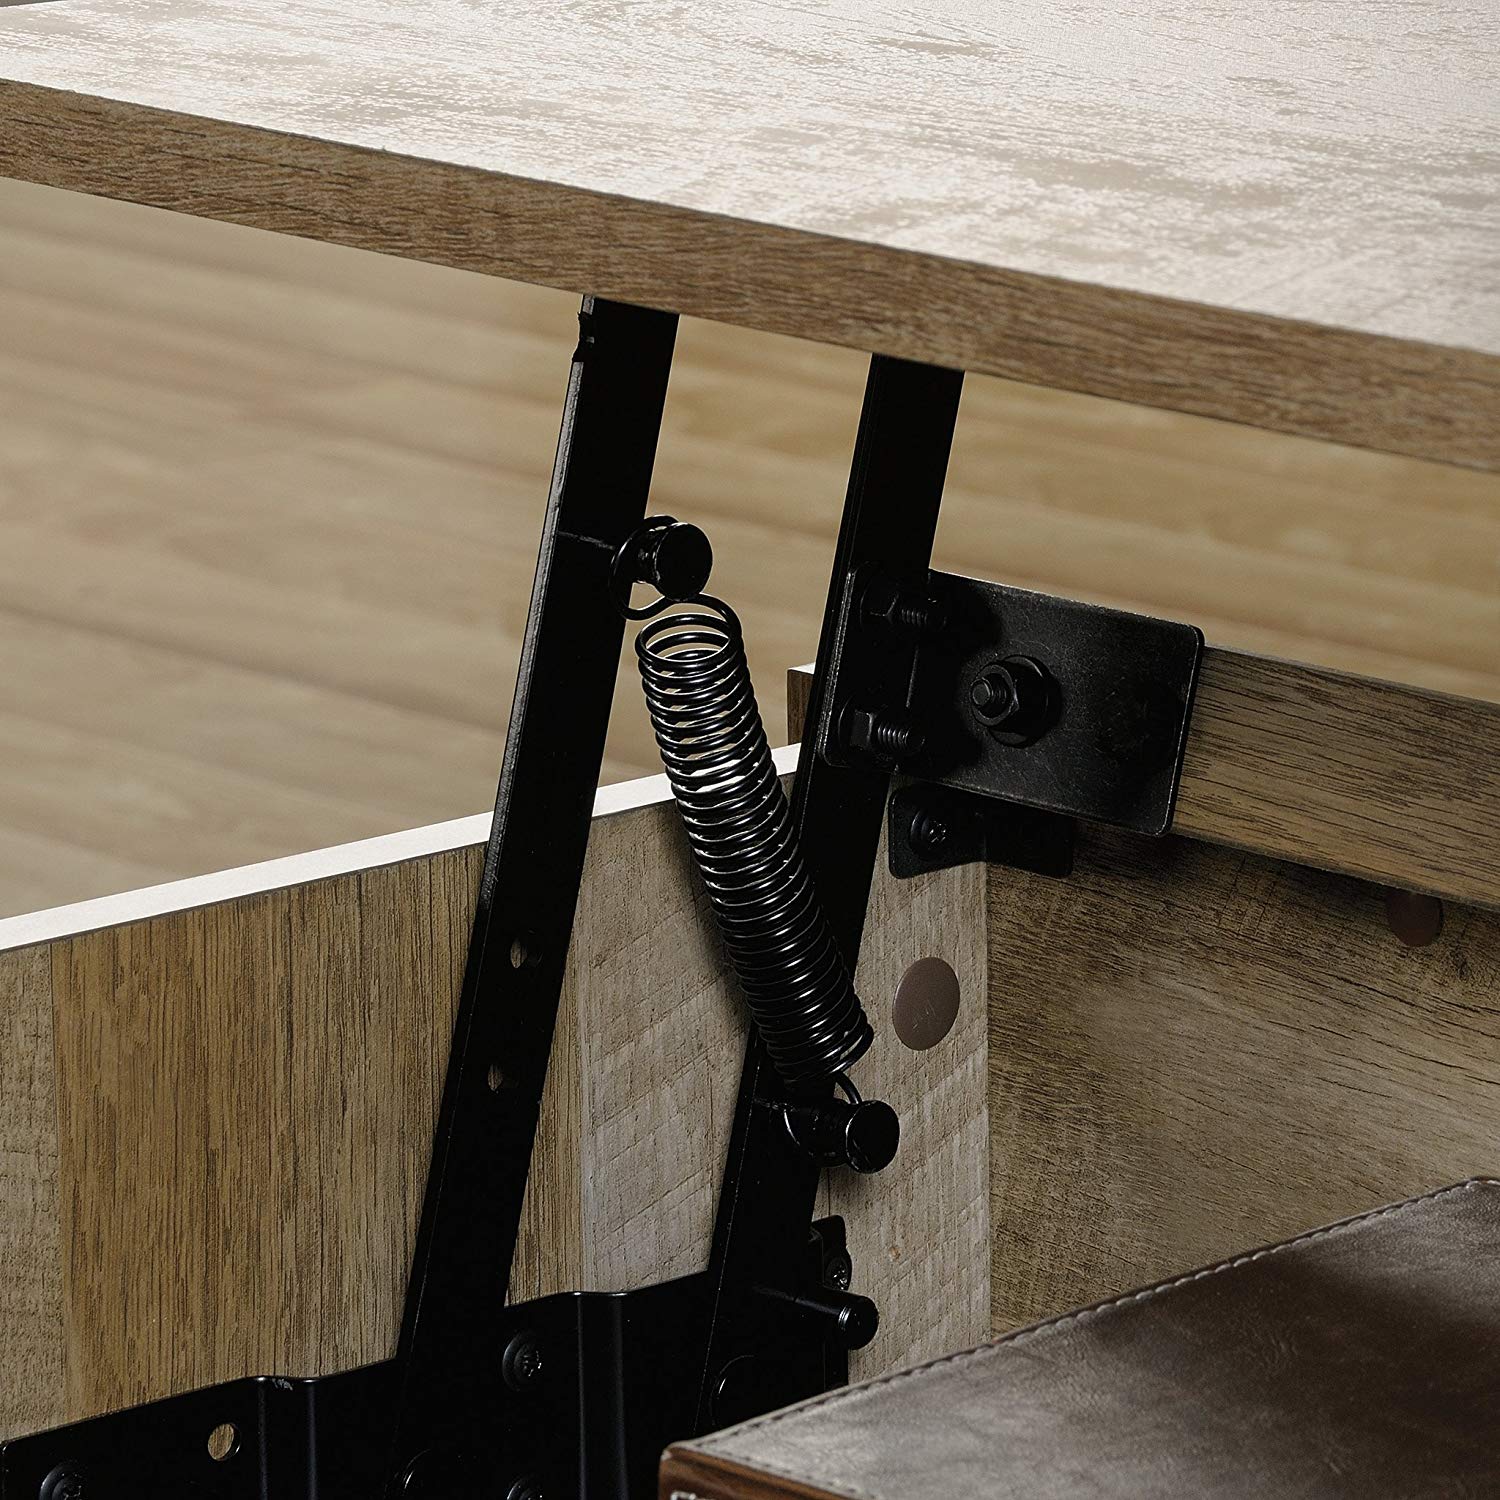 Sauder 420011 Dakota Pass Lift Top Coffee Table, L: 43.15" x W: 19.45" x H: 19.02", Craftsman Oak finish